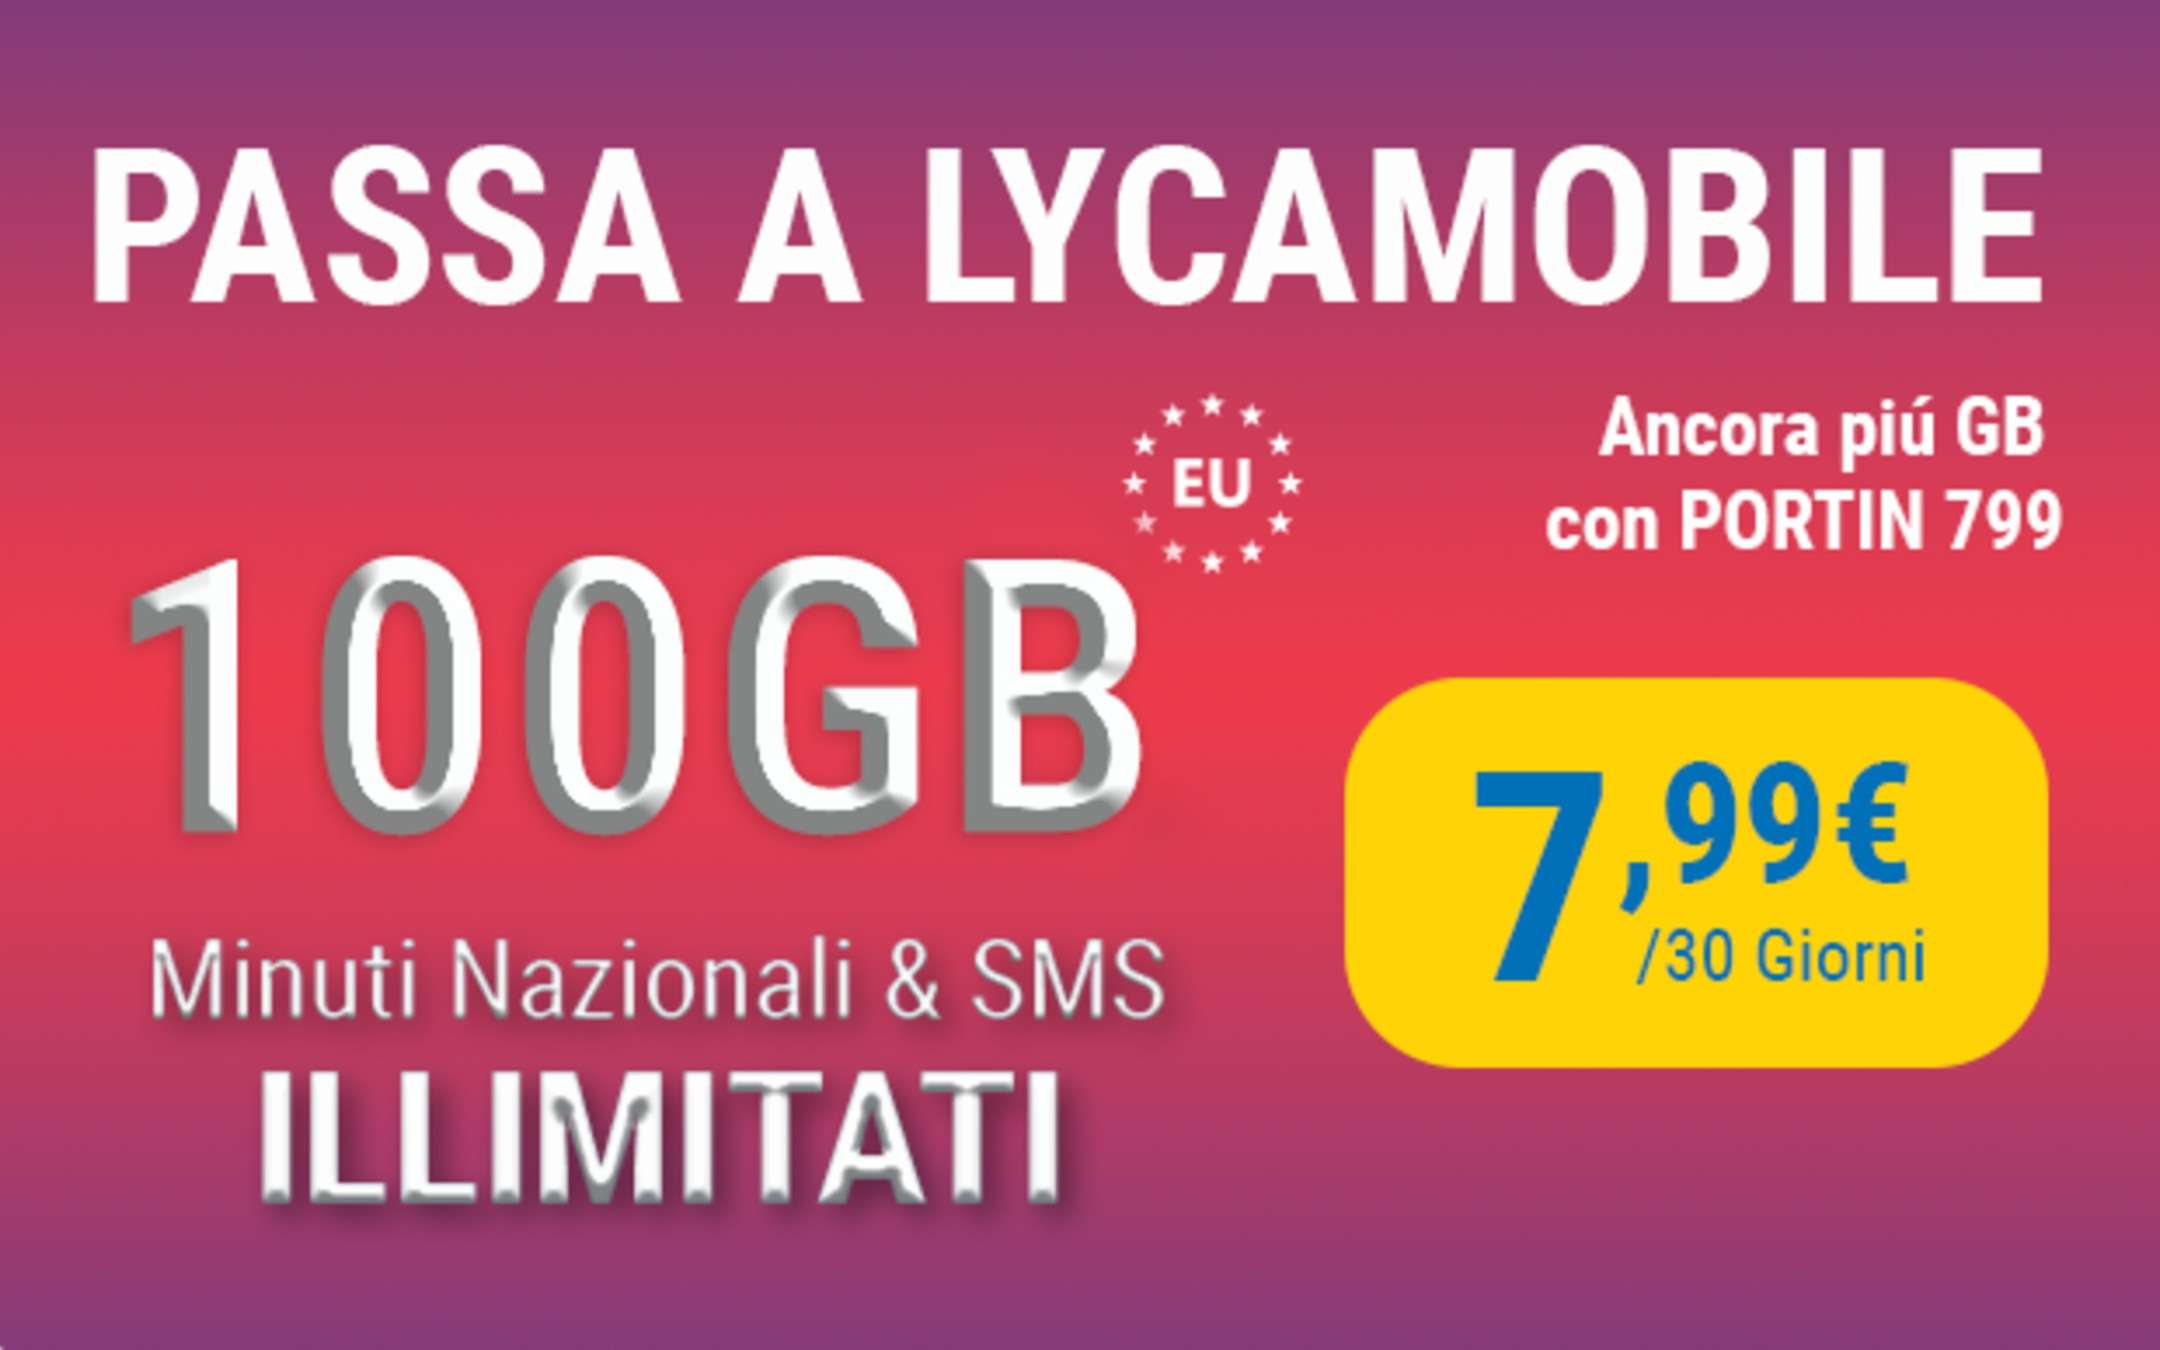 Lyca Mobile PortIN 7,99: ora con 100GB di internet